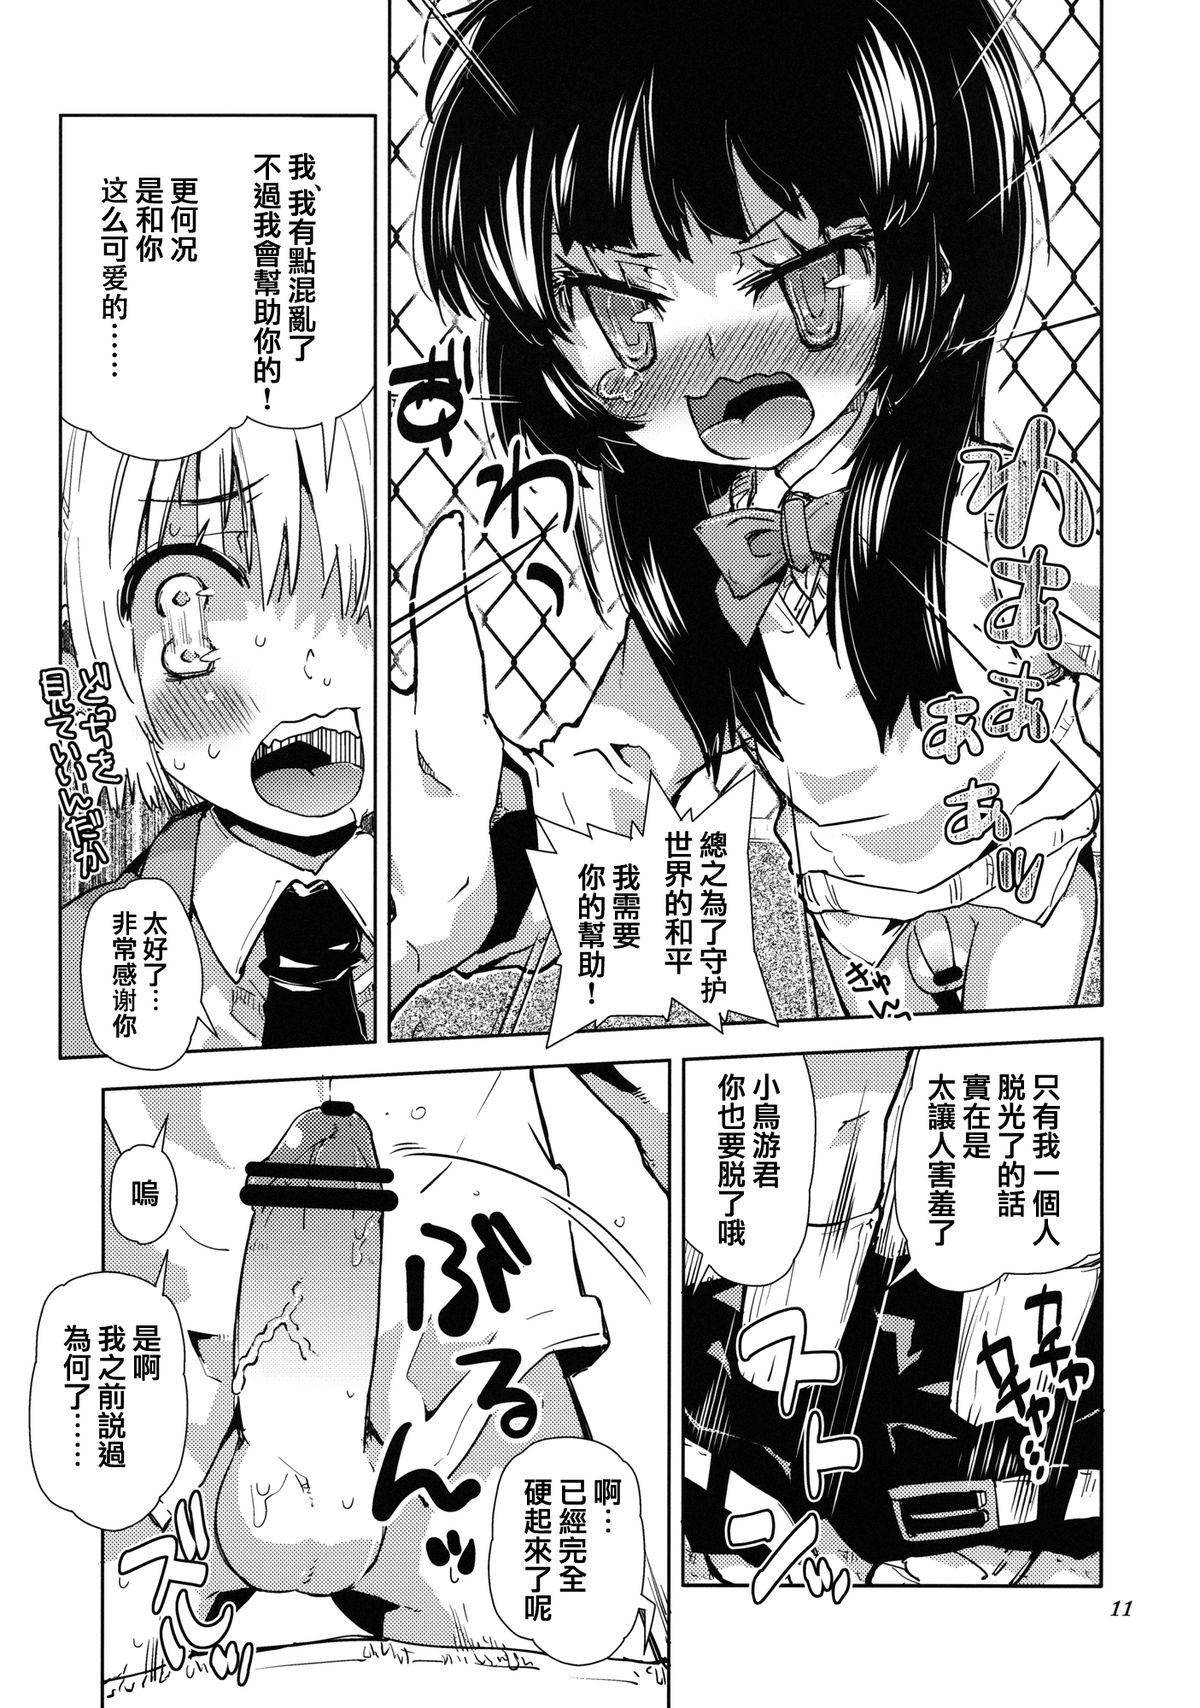 Cuckolding Sekai ga Dou Toka itsu Chau Otoko no Musume wa Denpa Kawaii. Boy Fuck Girl - Page 9